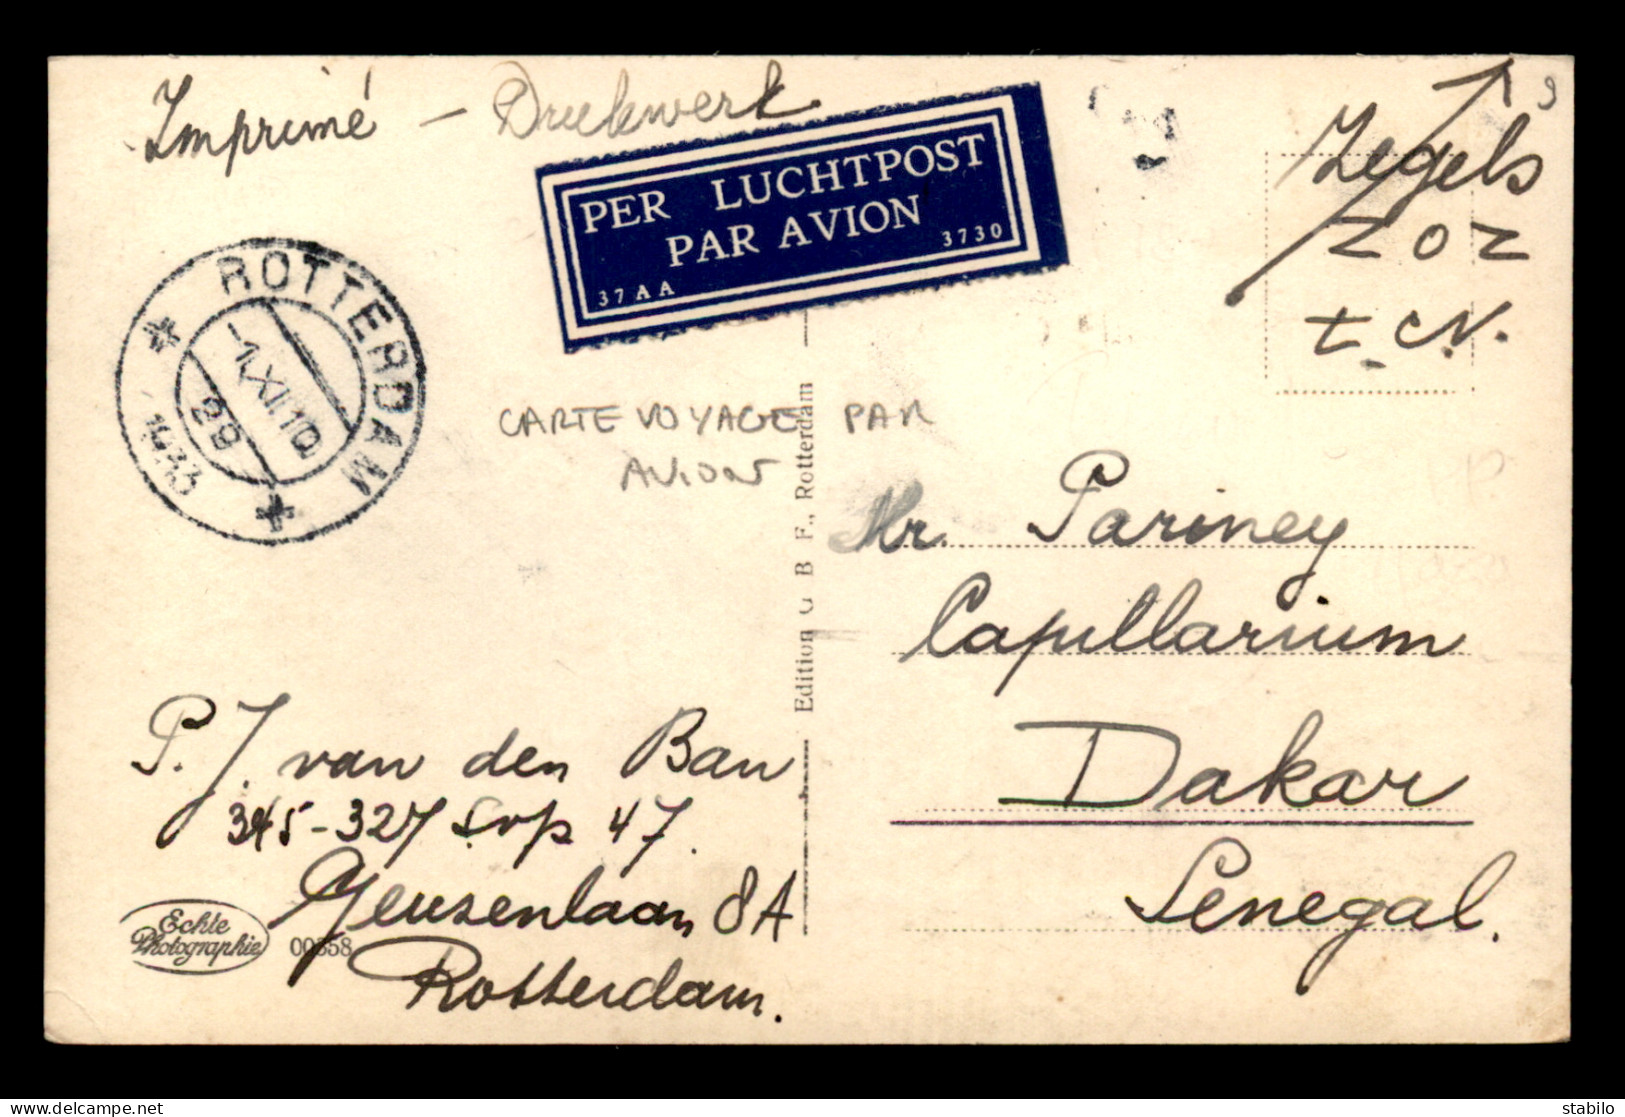 CARTE VOYAGE PAR AVION ENTRE ROTTERDAM (PAYS-BAS) ET DAKAR (SENEGAL) EN 1933 - Postal History